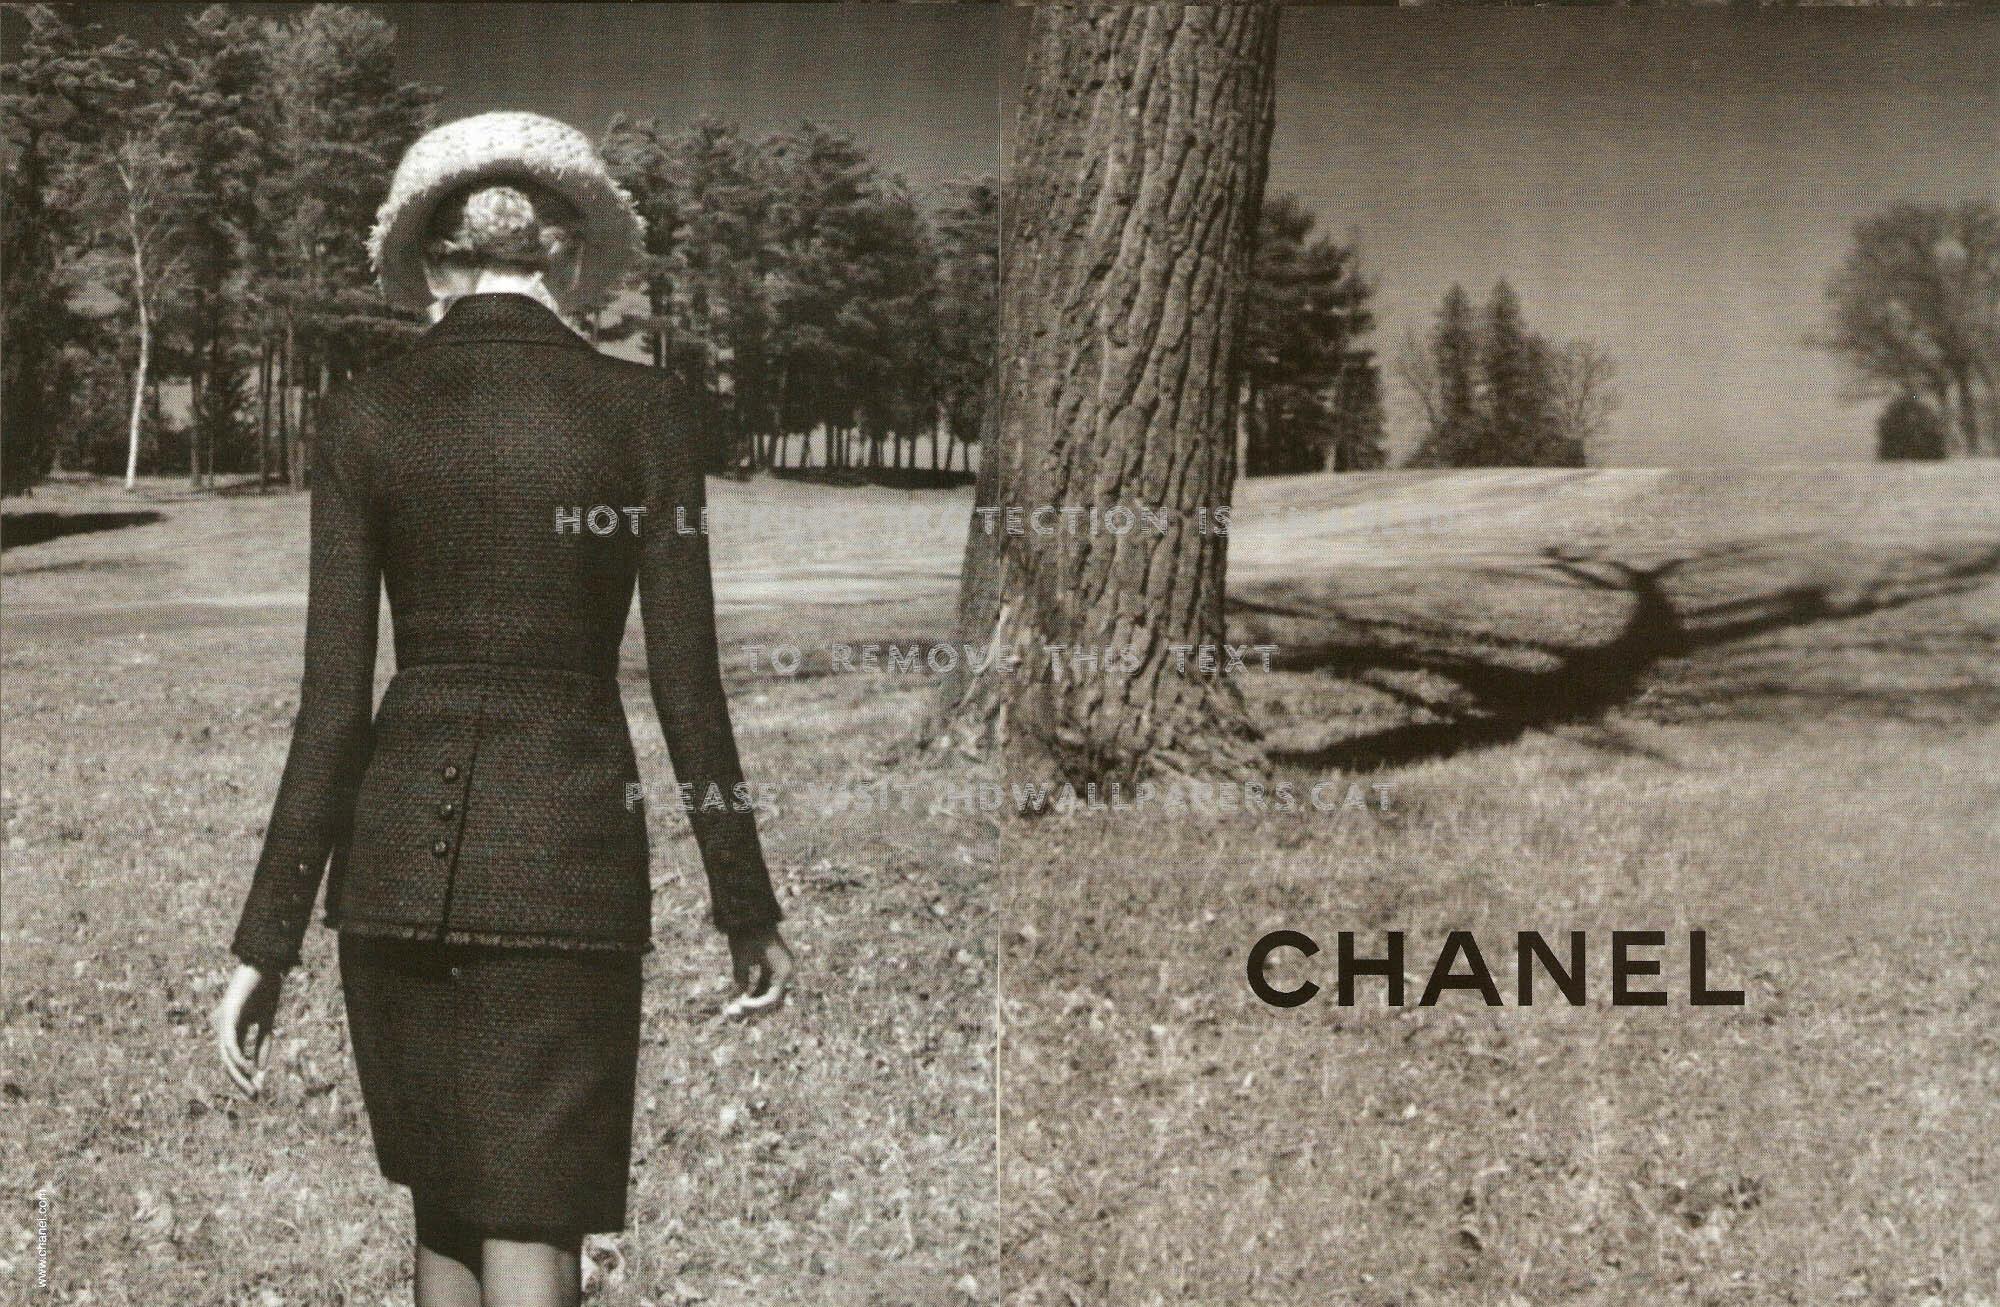 Chanel F W 09.10 02 Ad Campaign Heidi Mount